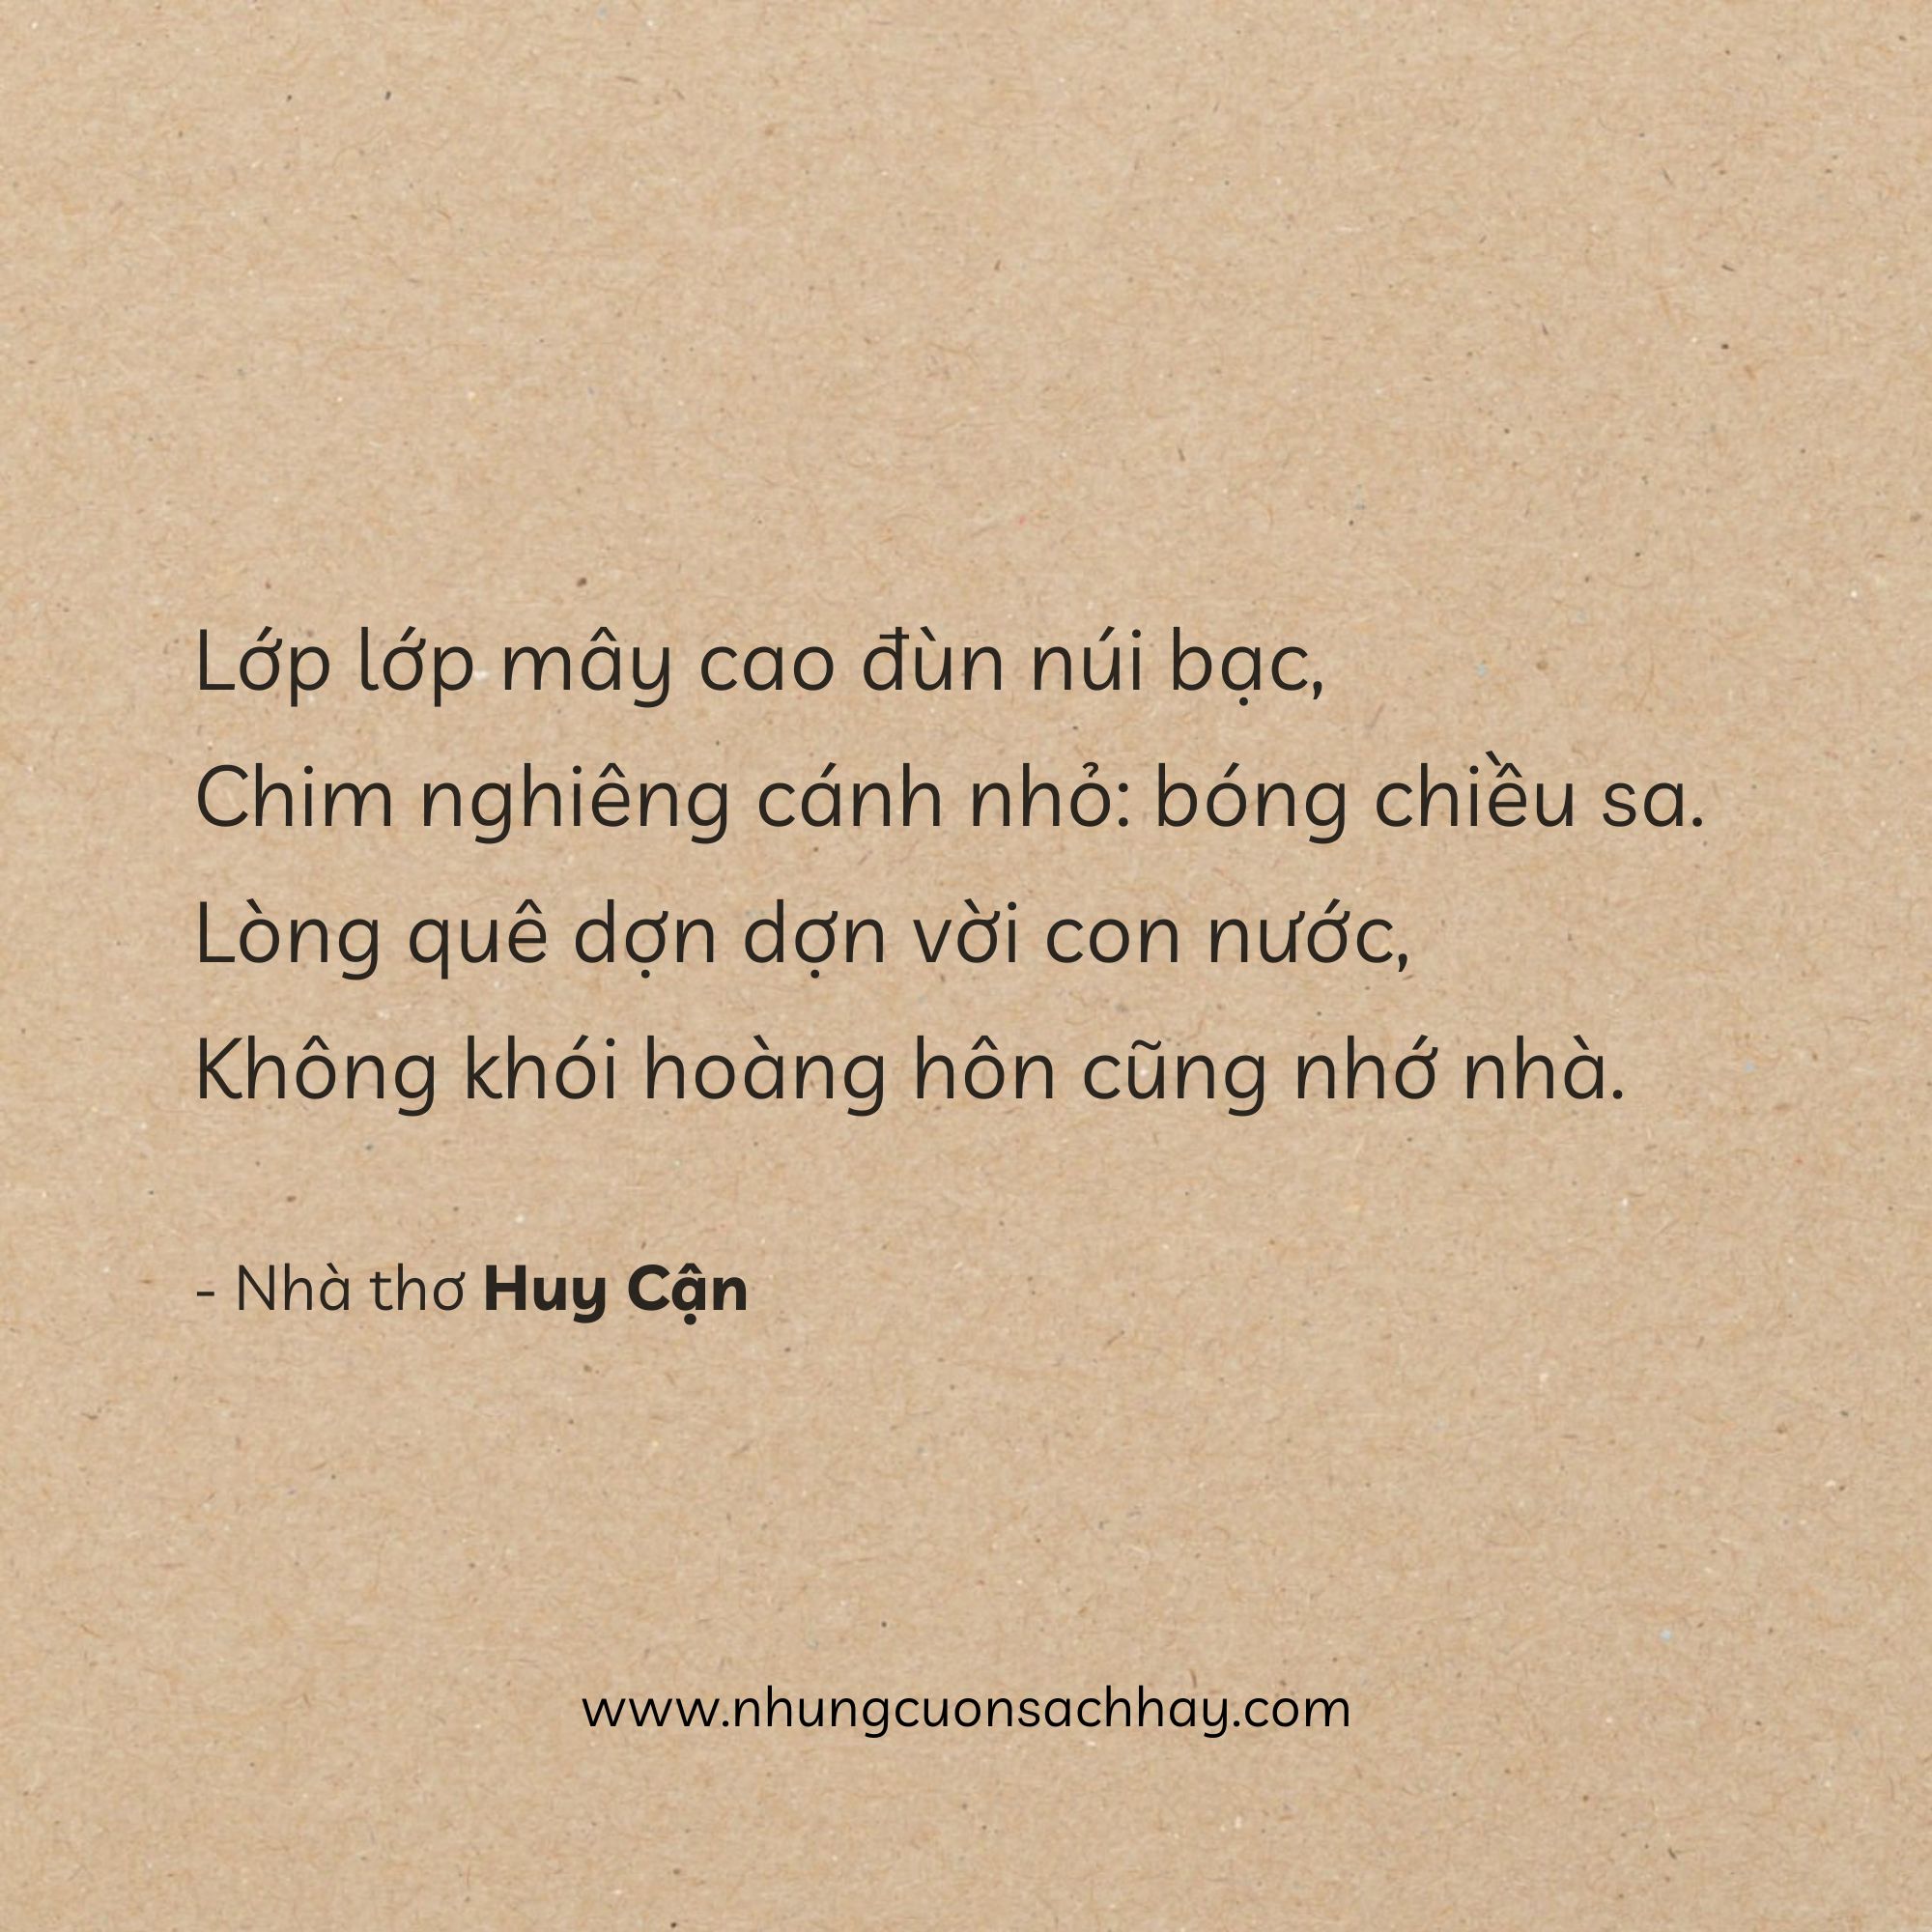 Tràng Giang - Huy Cận